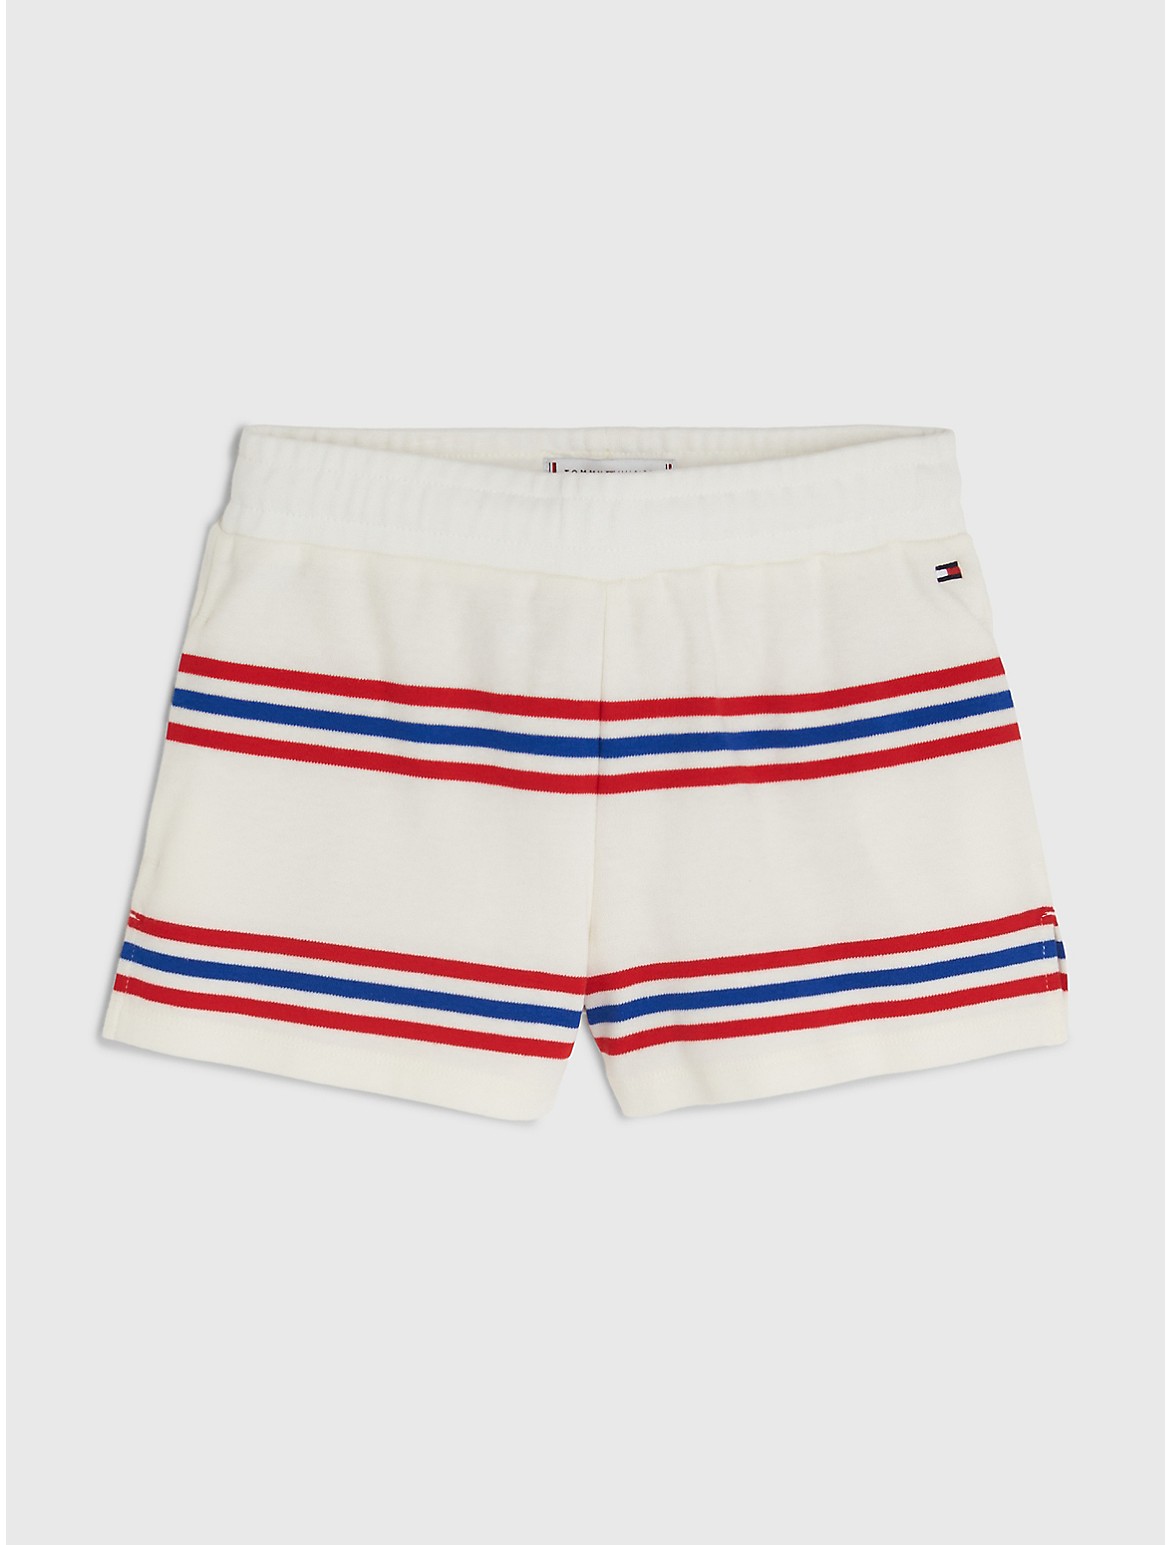 Tommy Hilfiger Girls' Kids' Varsity Stripe Short - White - 6